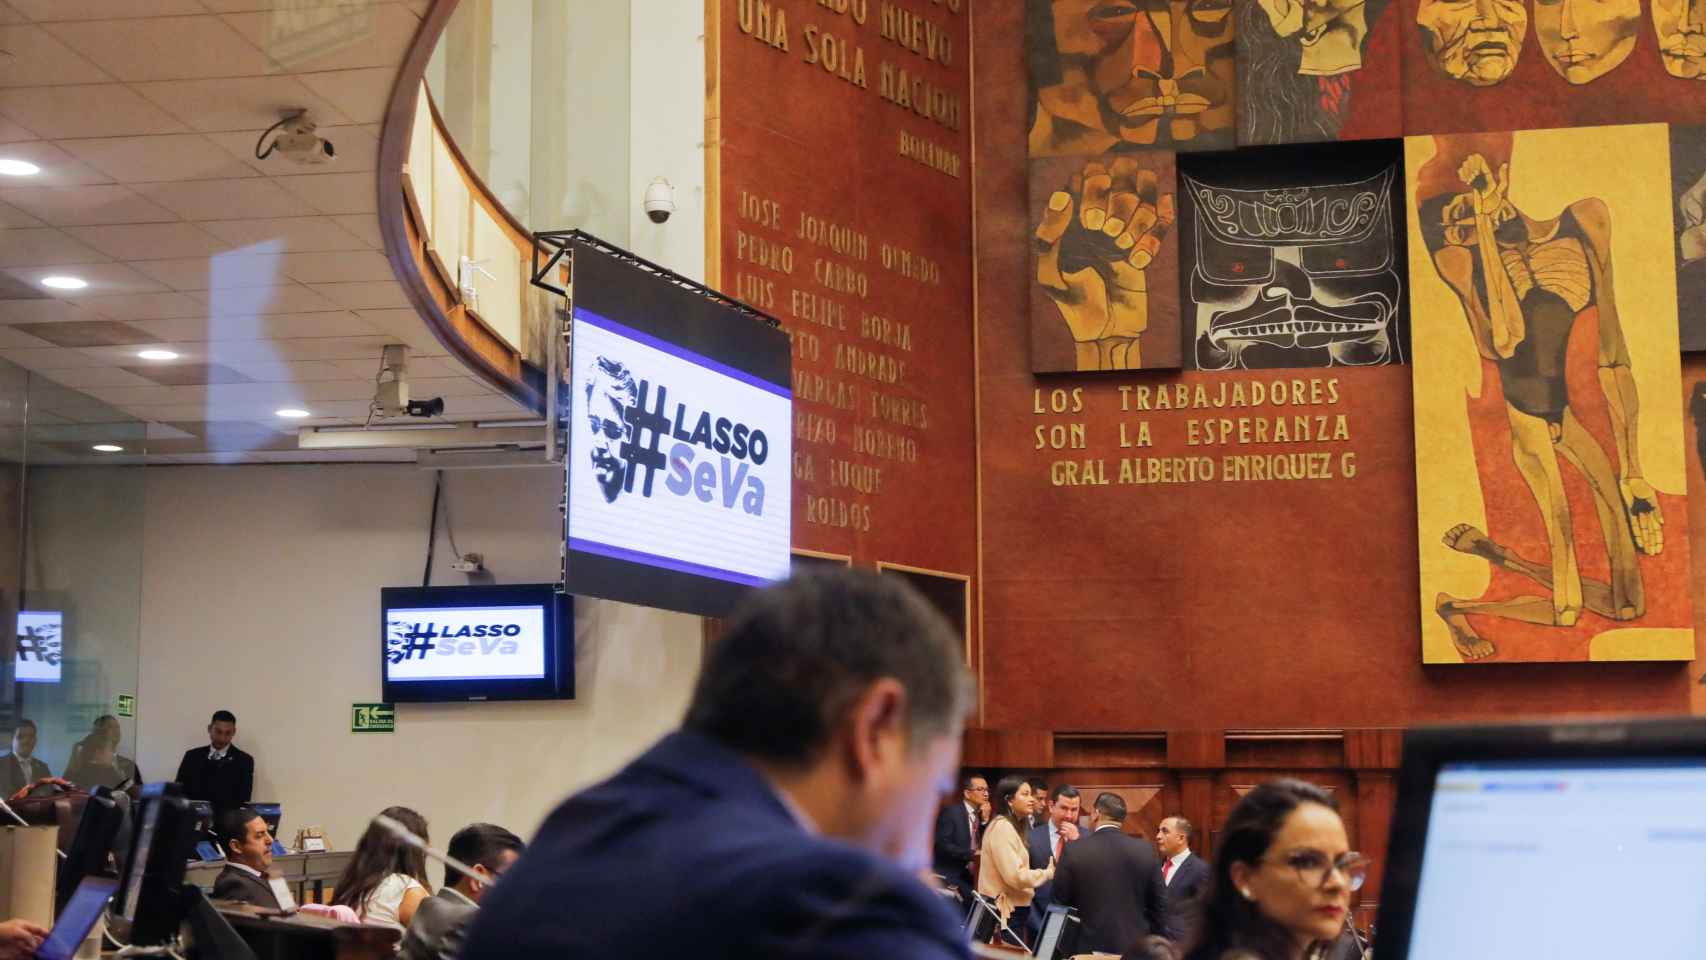 Una pantalla de la Asamblea Nacional ecuatoriana muestra el eslogan #Lasso Se Va, este martes.